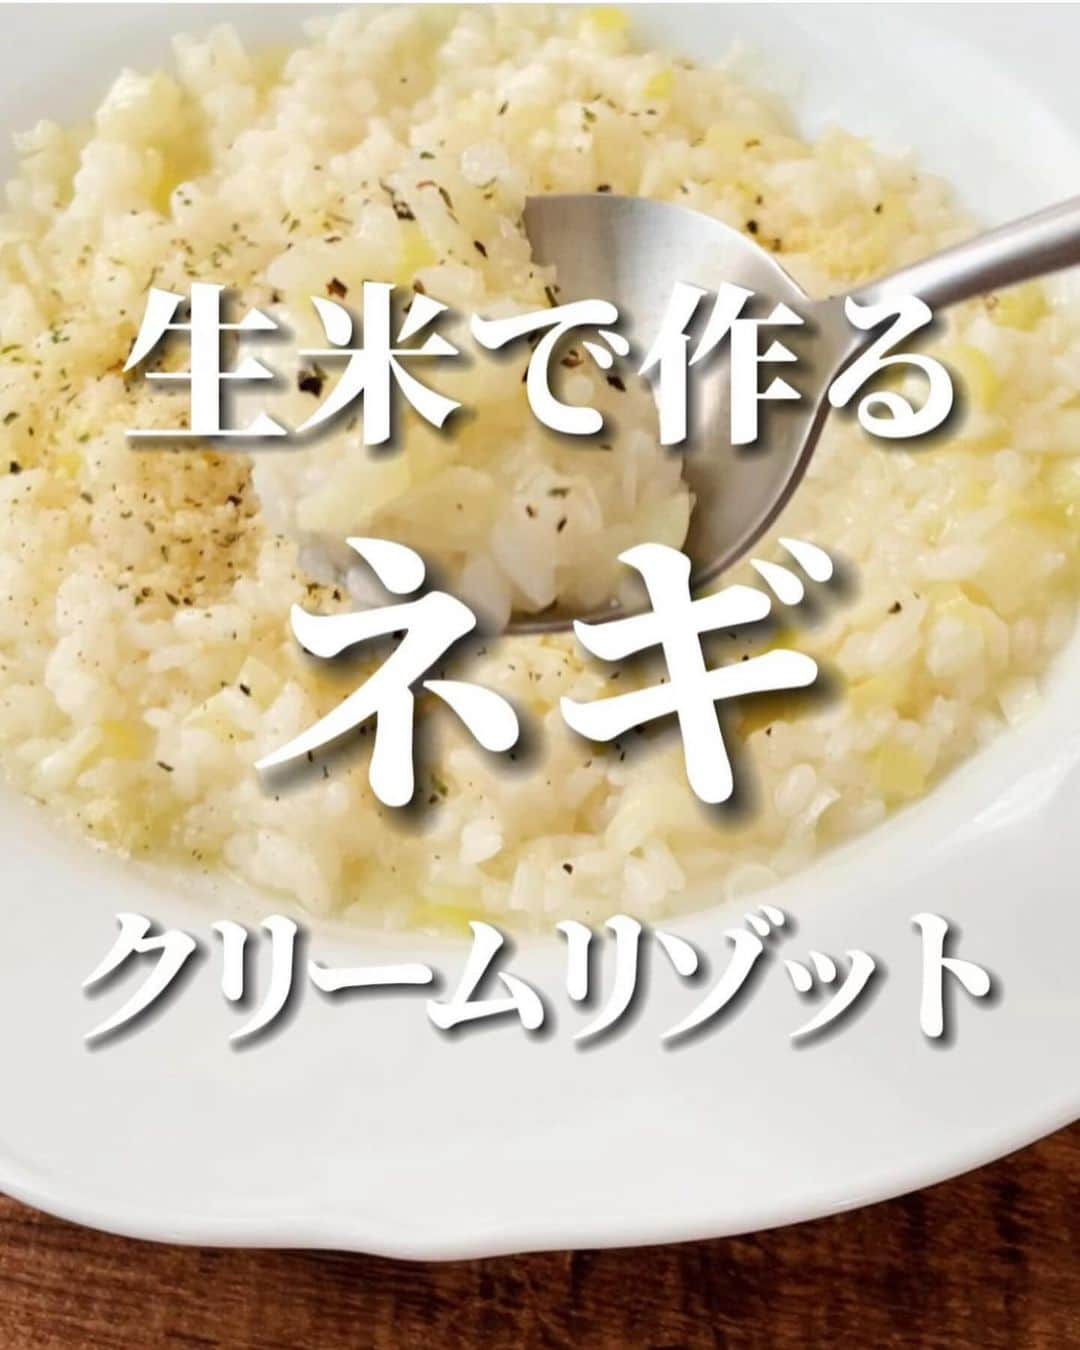 伊賀るり子のインスタグラム：「他のレシピは @ruriscooking  【生米でネギクリームリゾット】 生米から作るから本格的なリゾットの味わいなんだけど…レンジで出来るから超簡単！！ 長ネギを買ったら必ず作ってるお気に入りレシピです。  ネギのクリームリゾット 材料（1人分） 生米 1/2合 長ネギ 1/2本 ⭐︎水 300ml ⭐︎ 白ワイン 大さじ1（無ければ料理酒でも🙆‍♀️） ⭐︎オリーブオイル 大さじ１ ⭐︎コンソメ 小さじ1 生クリーム　大さじ1と1/2 粉チーズ 適量 塩 少々 ブラックペッパー 少々  （クリーミーさはなくなるけど生クリーム無しでも美味しいよ！）   1.ネギは粗みじん切りにする 2.耐熱性の器に米と⭐︎の材料を入れて、ラップをかけずに600Wで8分加熱する 3.ねぎを加えて混ぜたらラップをかけてさらに4分加熱する 4.生クリームを加えて混ぜたらブラックペッパー・塩・粉チーズをかけて完成！  ※器が浅いと吹きこぼれる可能性があるので注意！（動画内で使用している器程度の深さが必要です）  ＼簡単美味しい！季節の野菜料理／ 料理研究家のおうちごはん @ruriscooking   #ネギ #ネギレシピ #長ネギ #昼ごはん #野菜レシピ #簡単レシピ #節約レシピ #節約料理 #簡単料理 #レンジレシピ #ひとりごはん #野菜料理 #おうちカフェ #おうちビストロ #時短レシピ #時短料理 #おうちごはん #レンチンレシピ」